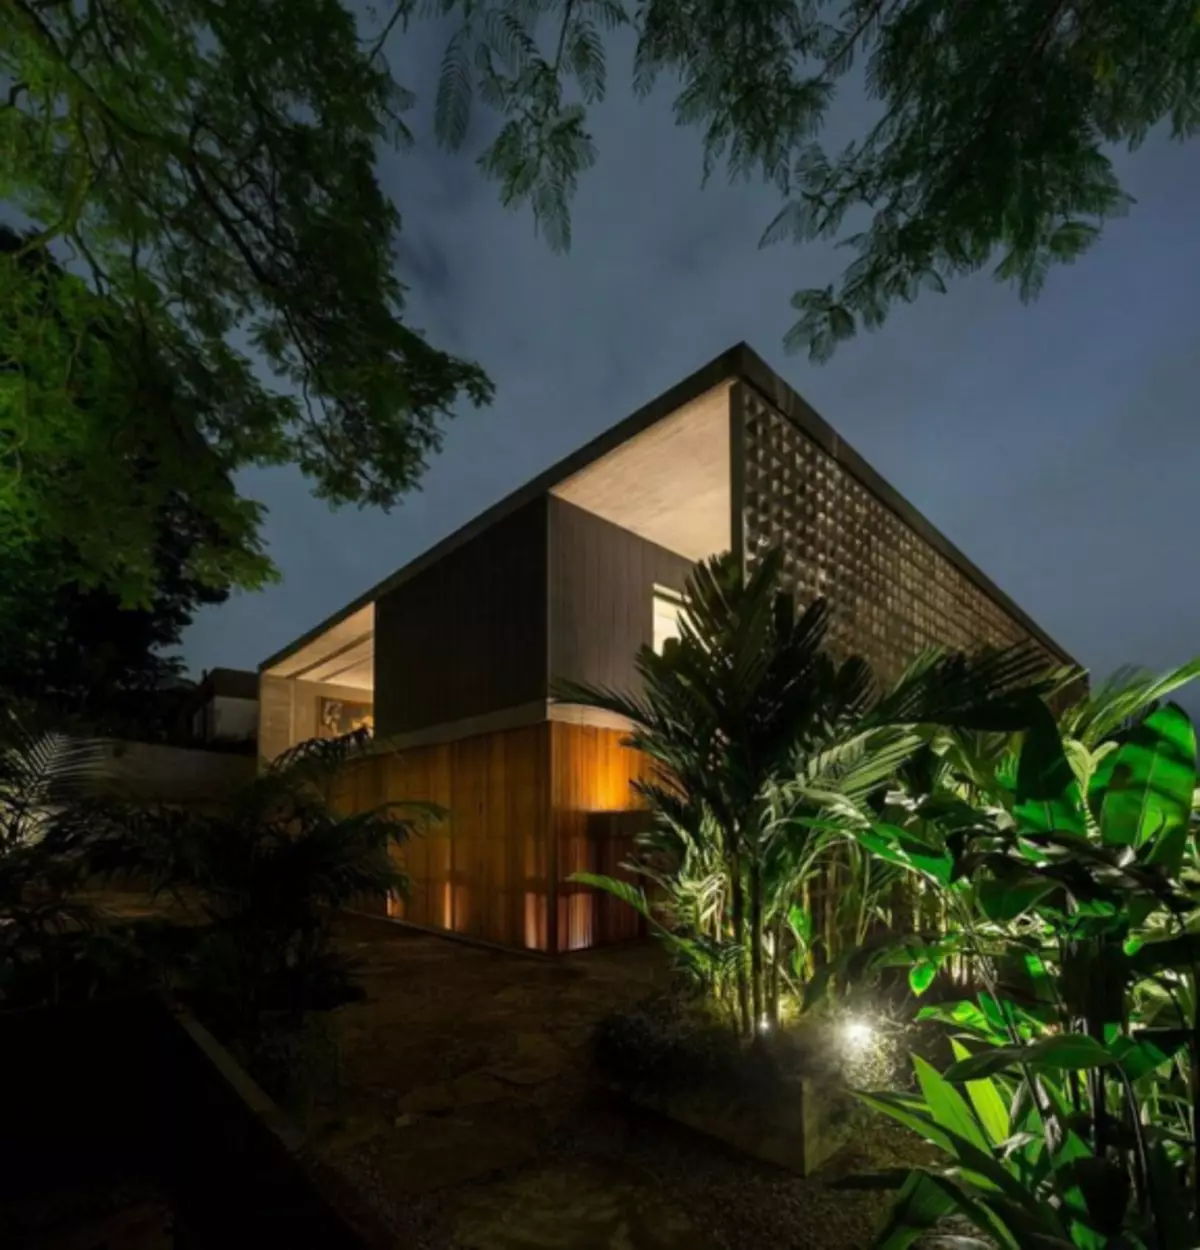 روشنایی خانه خصوصی - 100 عکس از ترکیب کامل